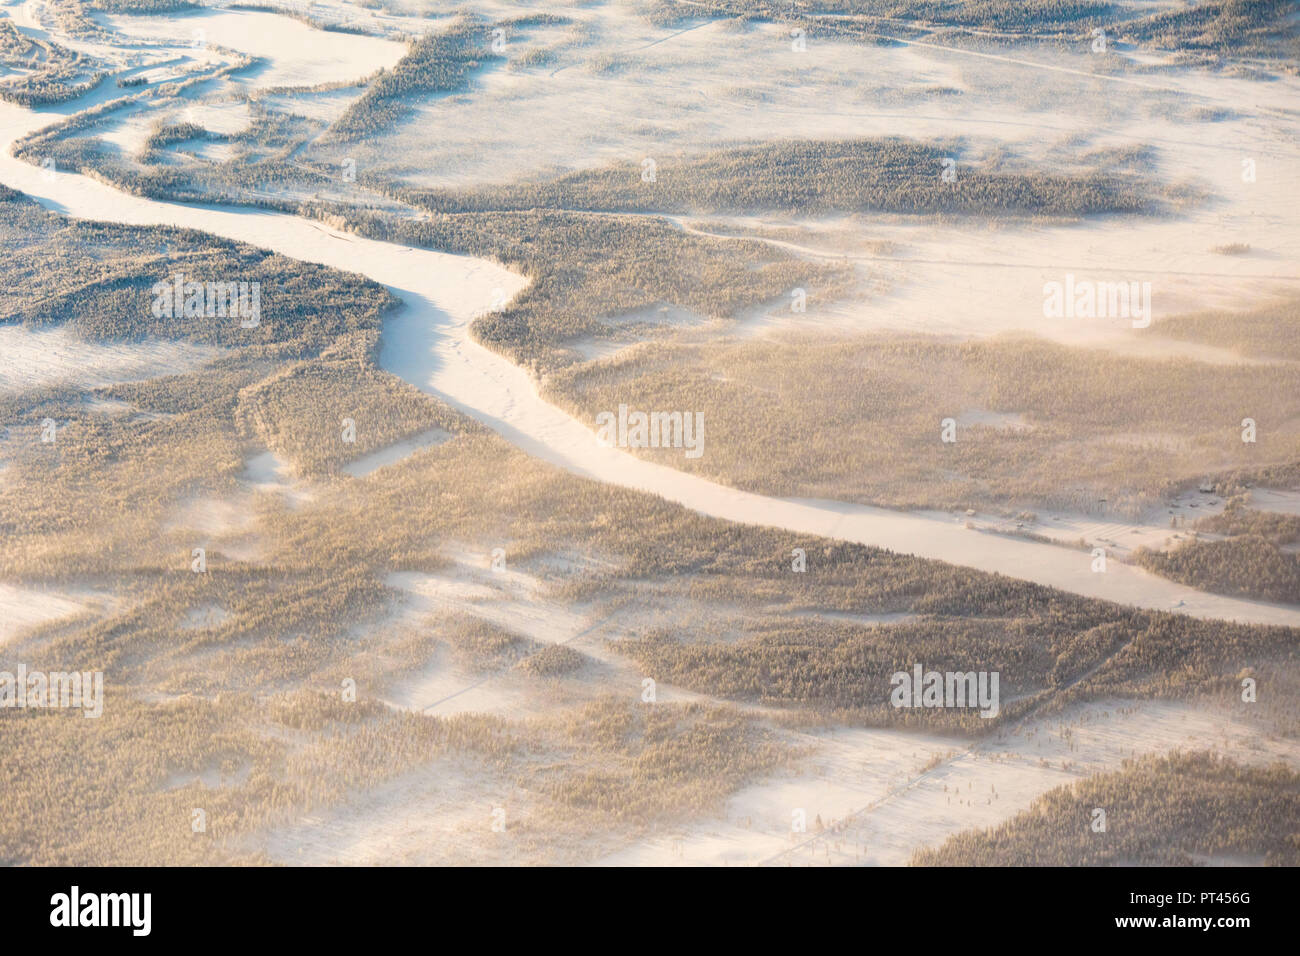 Vue aérienne de la forêt dans le paysage gelé, Levi, mine Kittila, Laponie, Finlande Banque D'Images